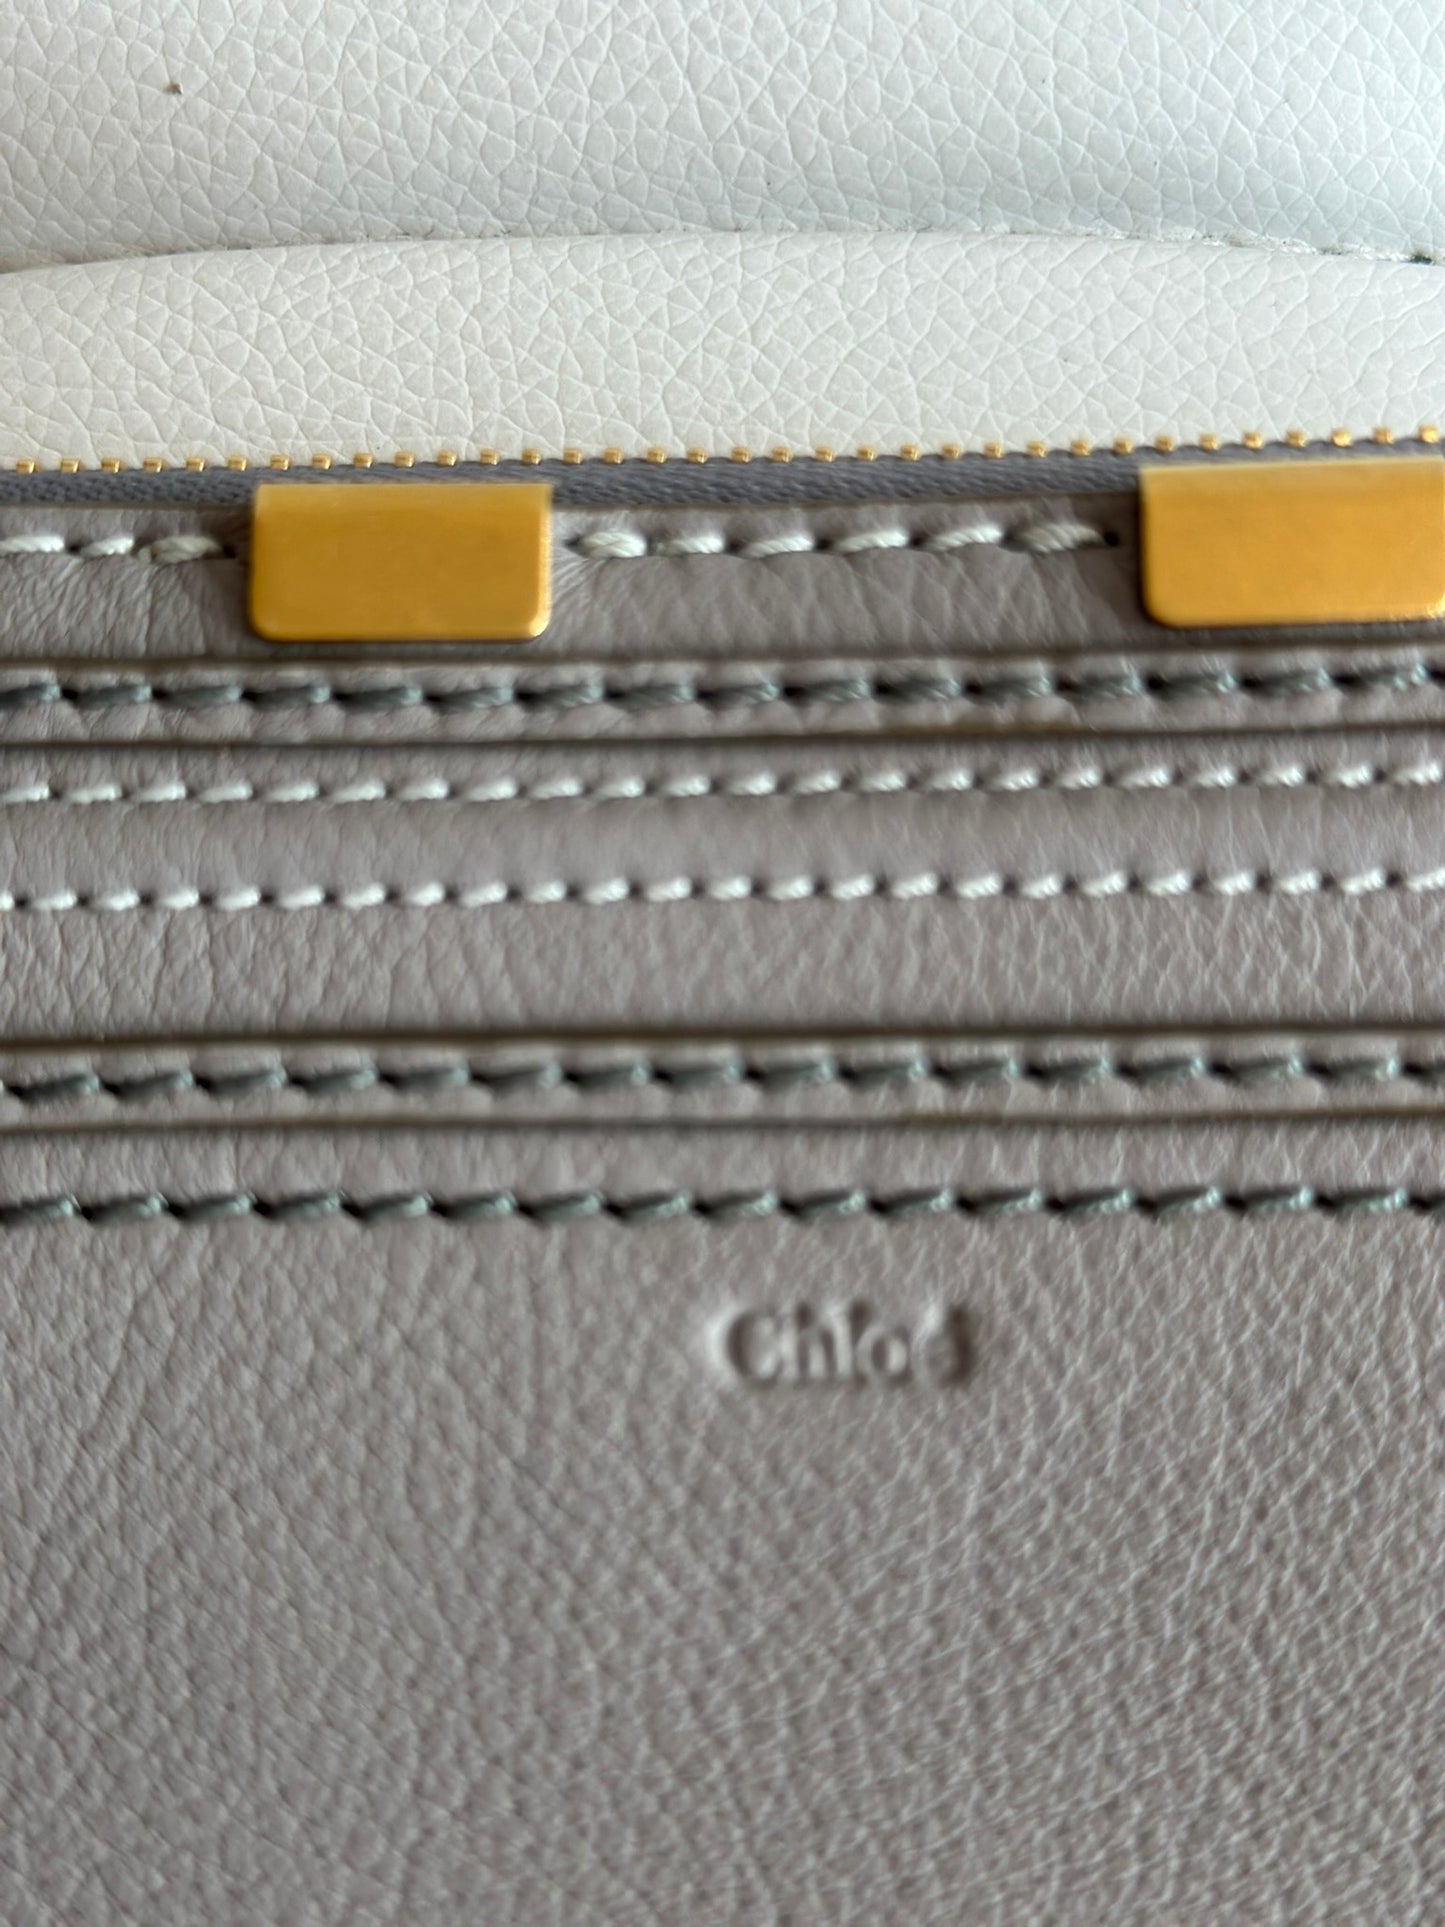 chloe cashmere grey zipper wallet purse excellent